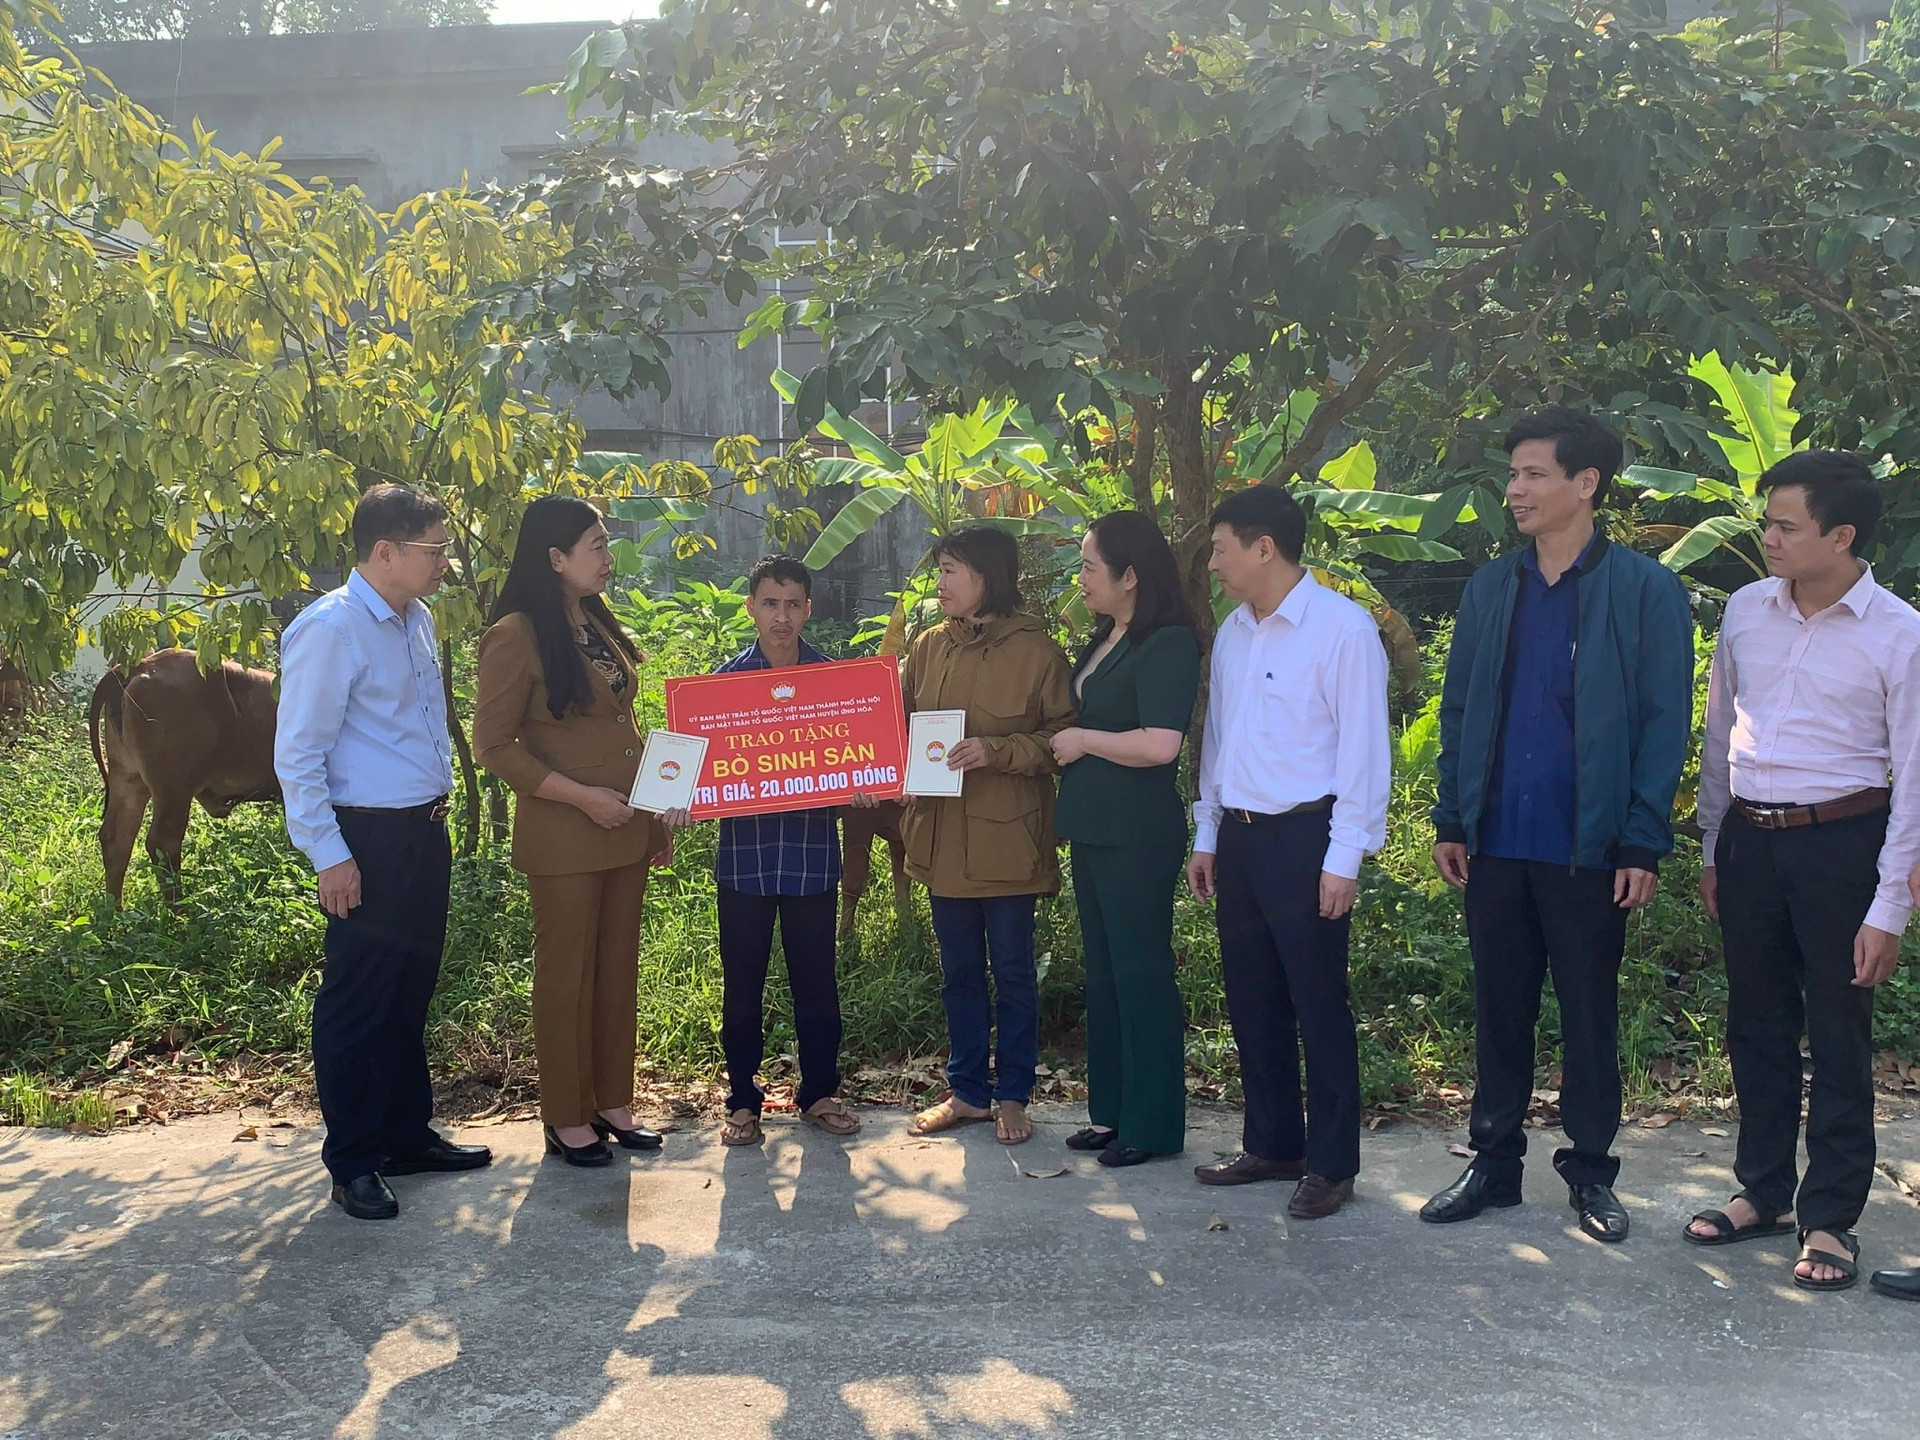 Chủ tịch Ủy ban MTTQ Việt Nam thành phố Hà Nội Nguyễn Lan Hương cùng cán bộ huyện Ứng hòa bàn giao bò sinh sản cho các hộ cận nghèo xã Viên Nội.